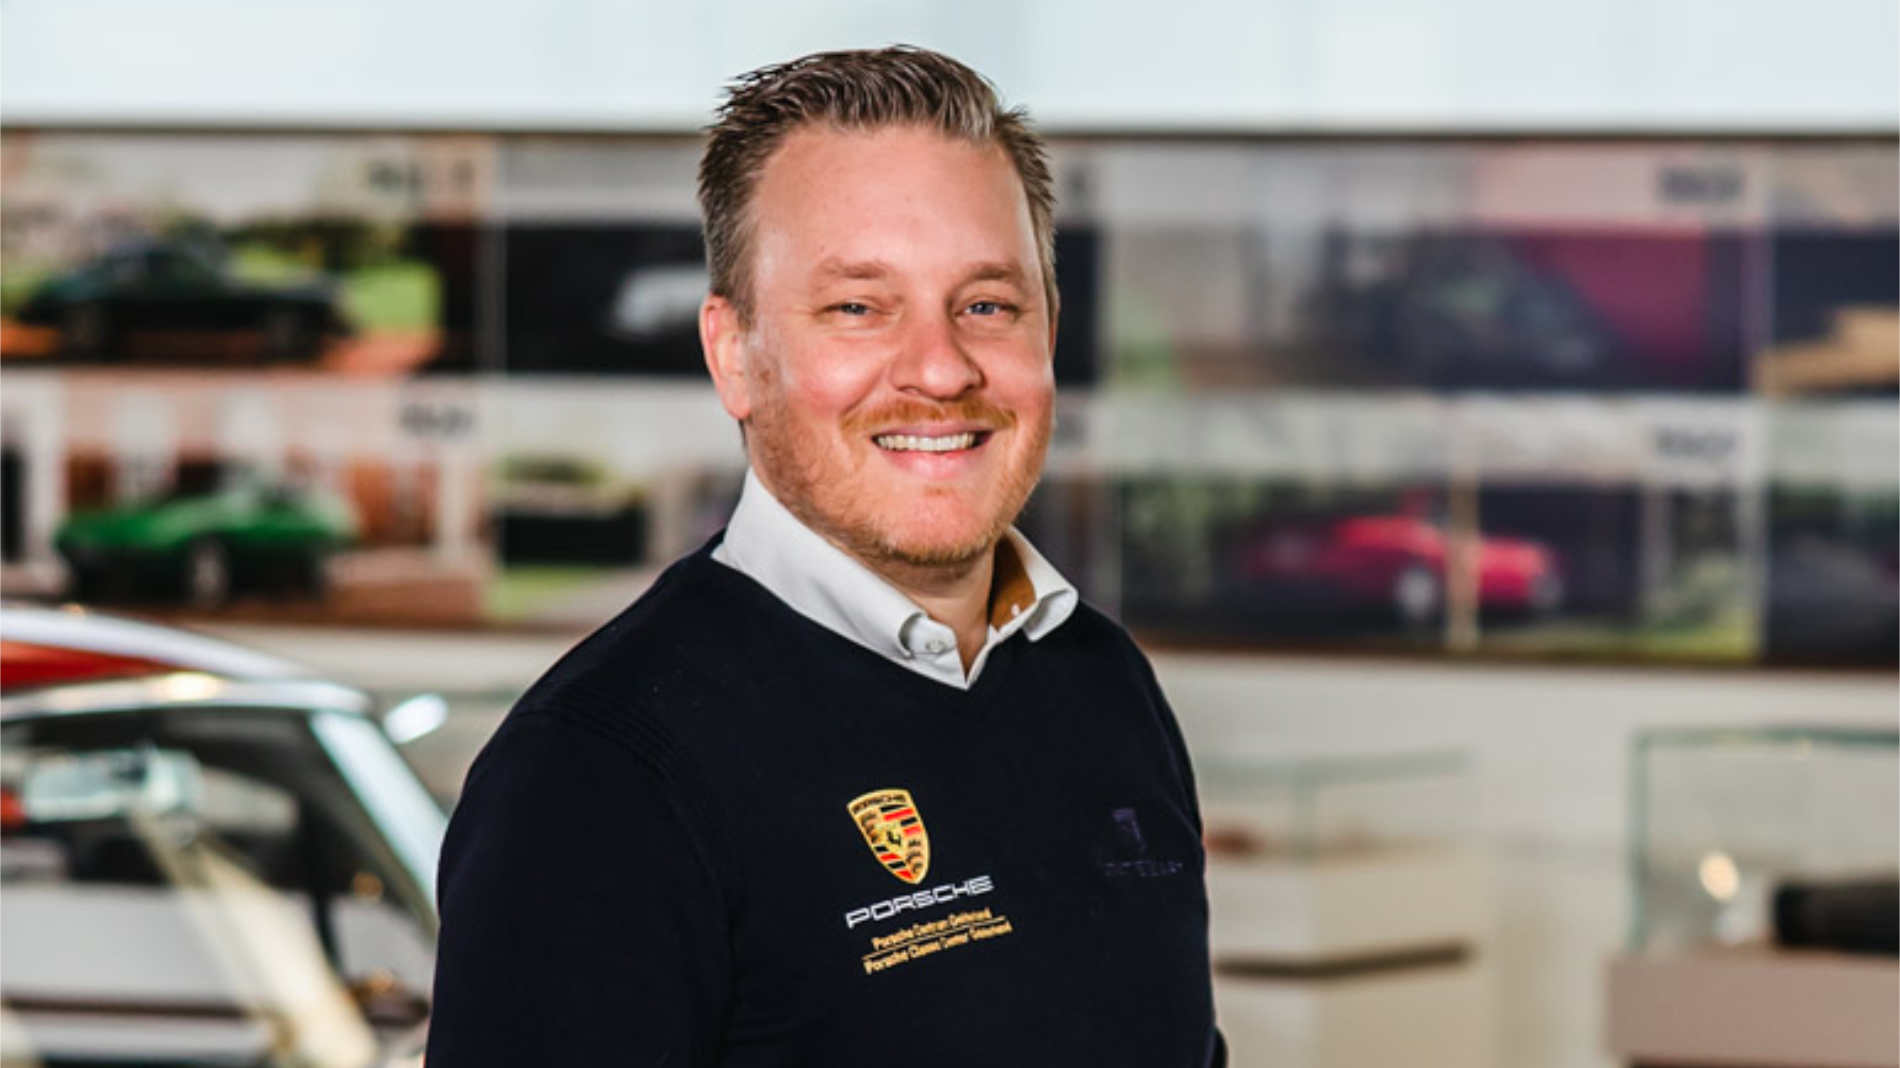 Freek Janssen, Manager, Porsche Classic Center Gelderland, Netherlands